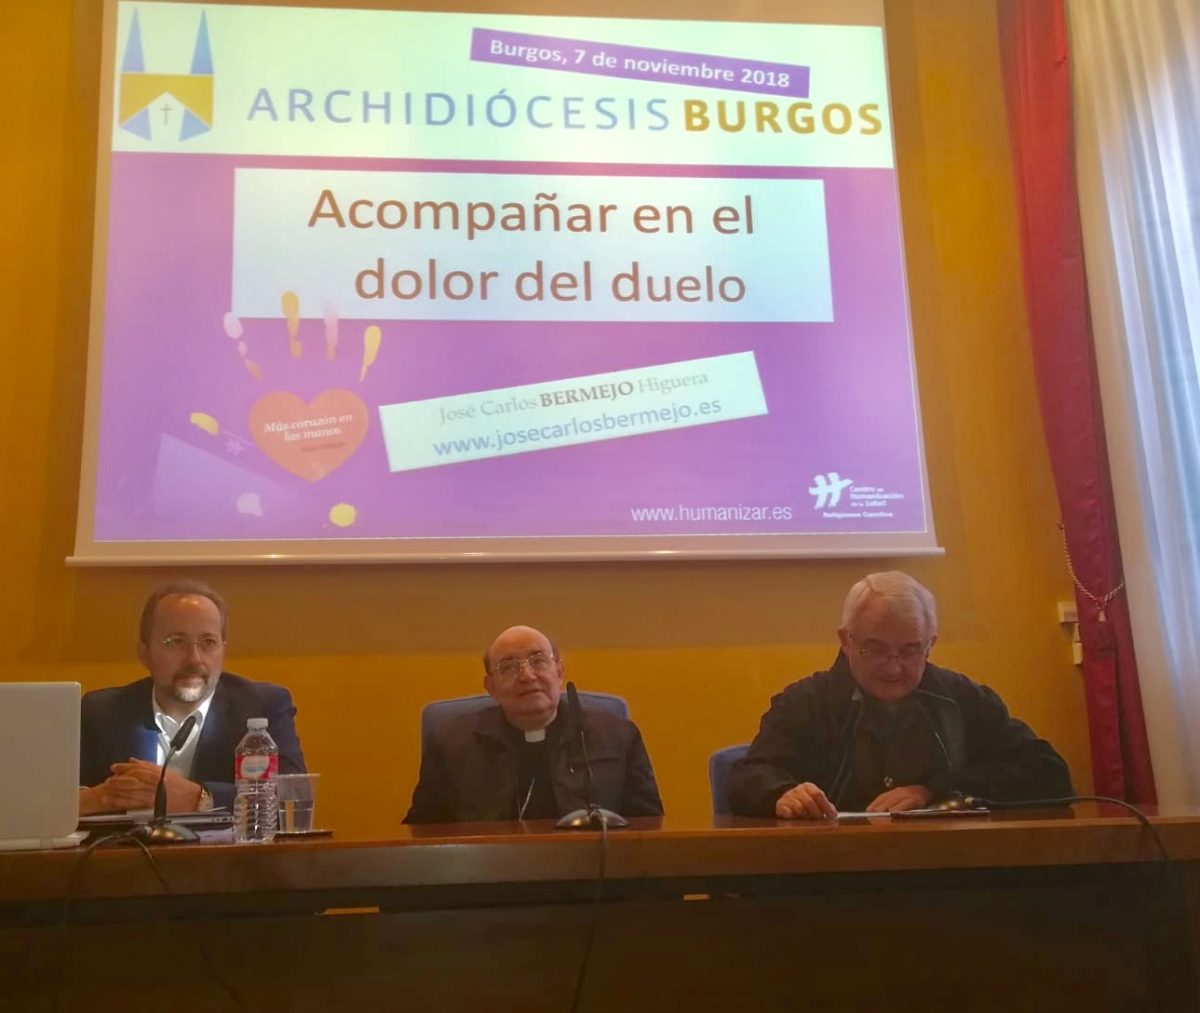 Arzobispo Fidel Herráez y José Carlos Bermejo en Burgos